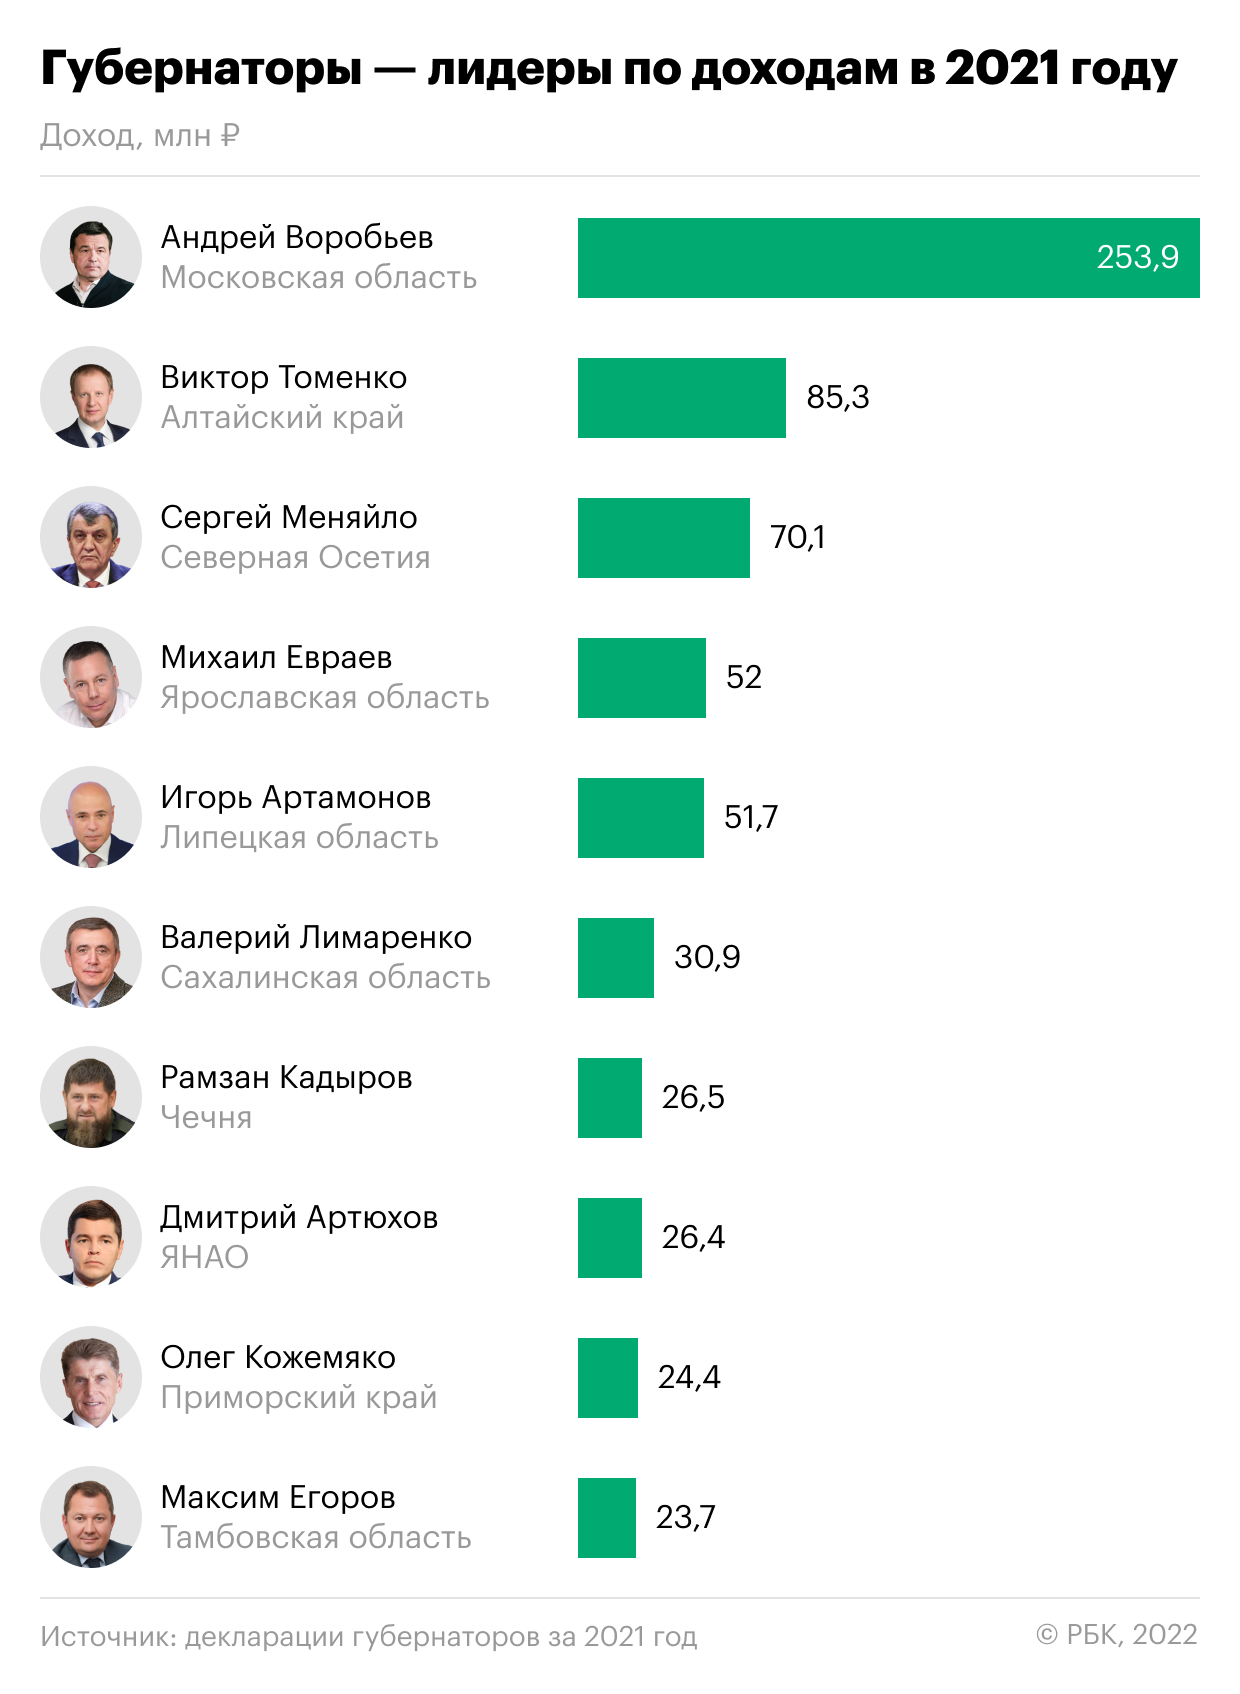 Кадыров выбыл из топ-5 богатейших глав регионов"/>













